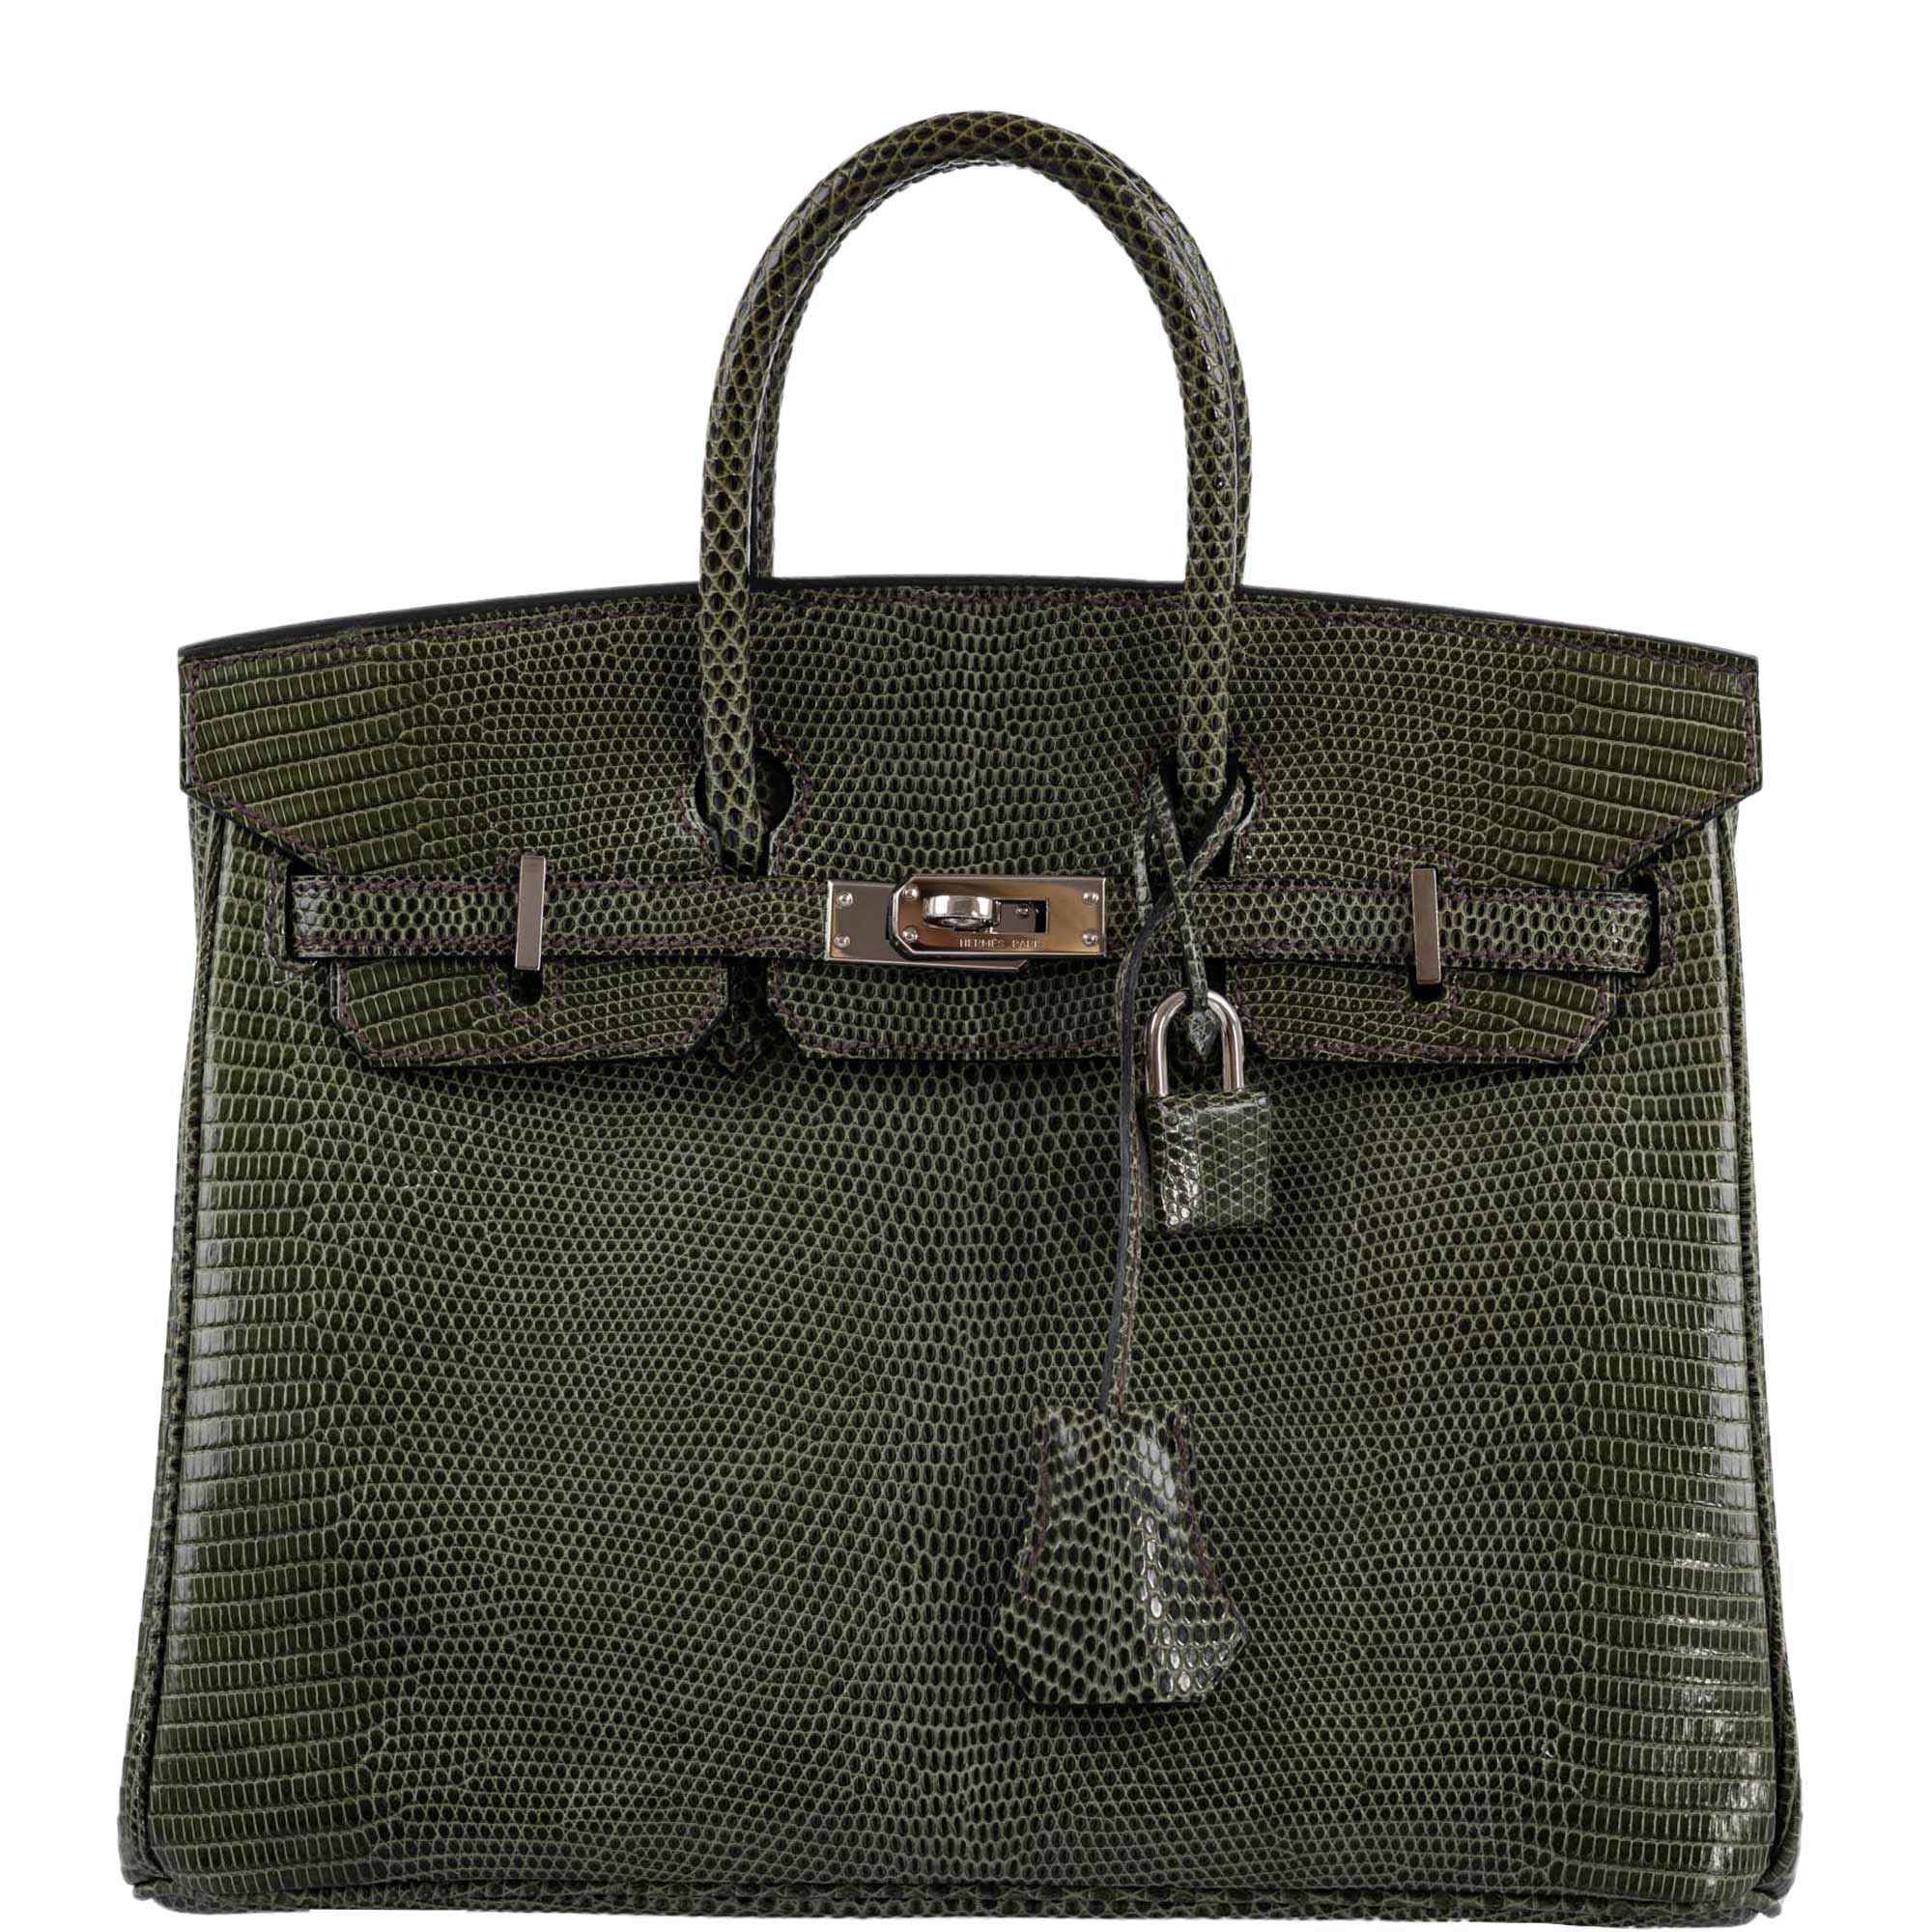 Hermes Olive Green Togo Leather Palladium Hardware Birkin 35 Bag Hermes